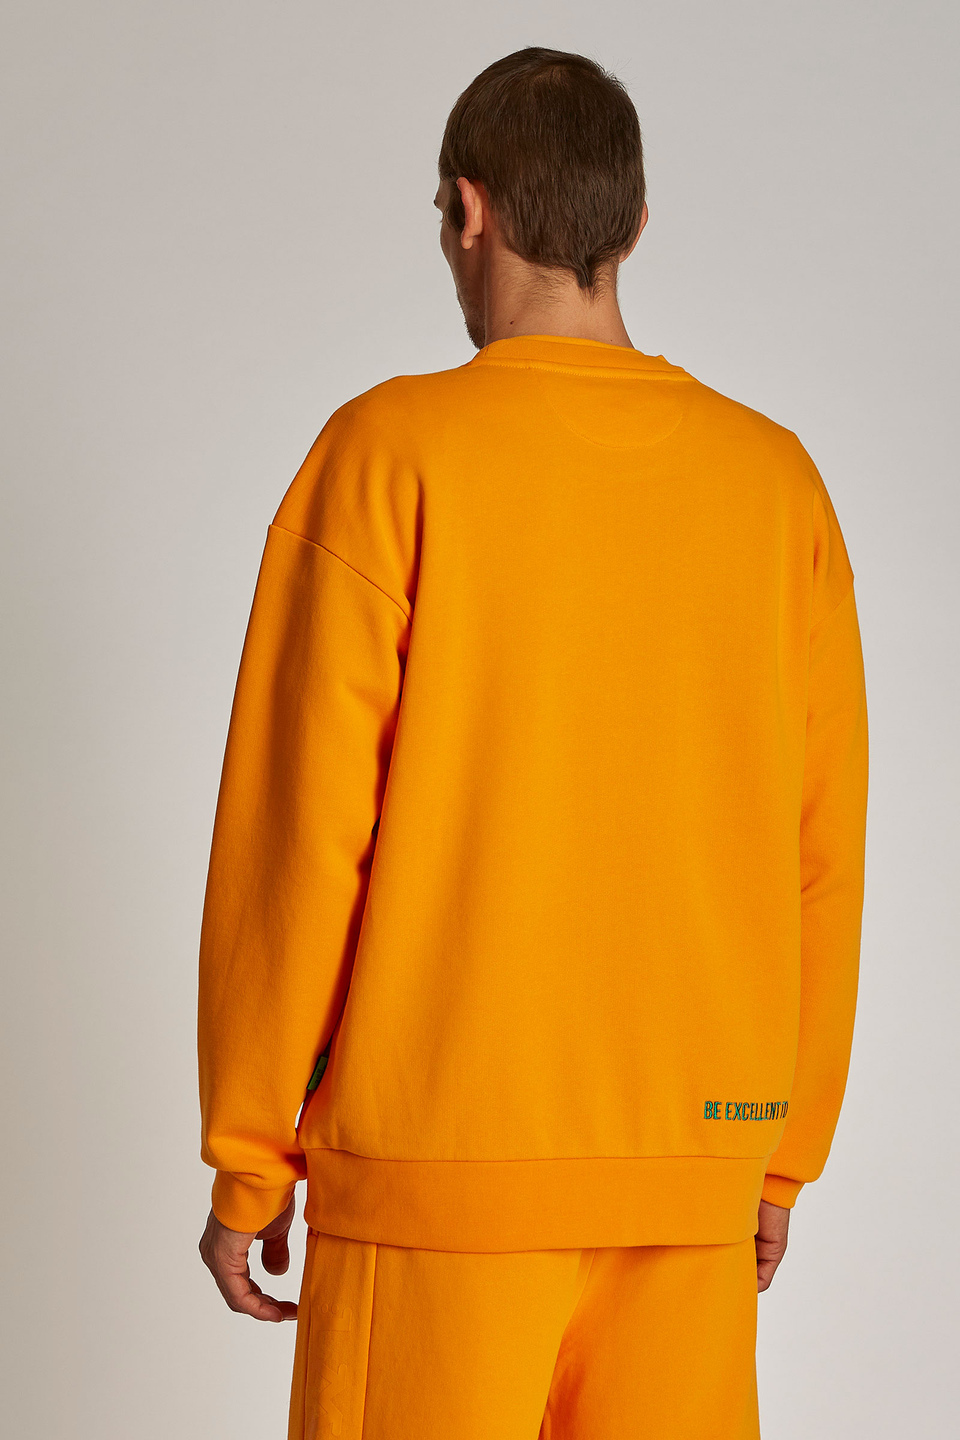 Herren-Sweatshirt aus 100 % Baumwolle mit runden Ausschnitt, oversized Modell | La Martina - Official Online Shop